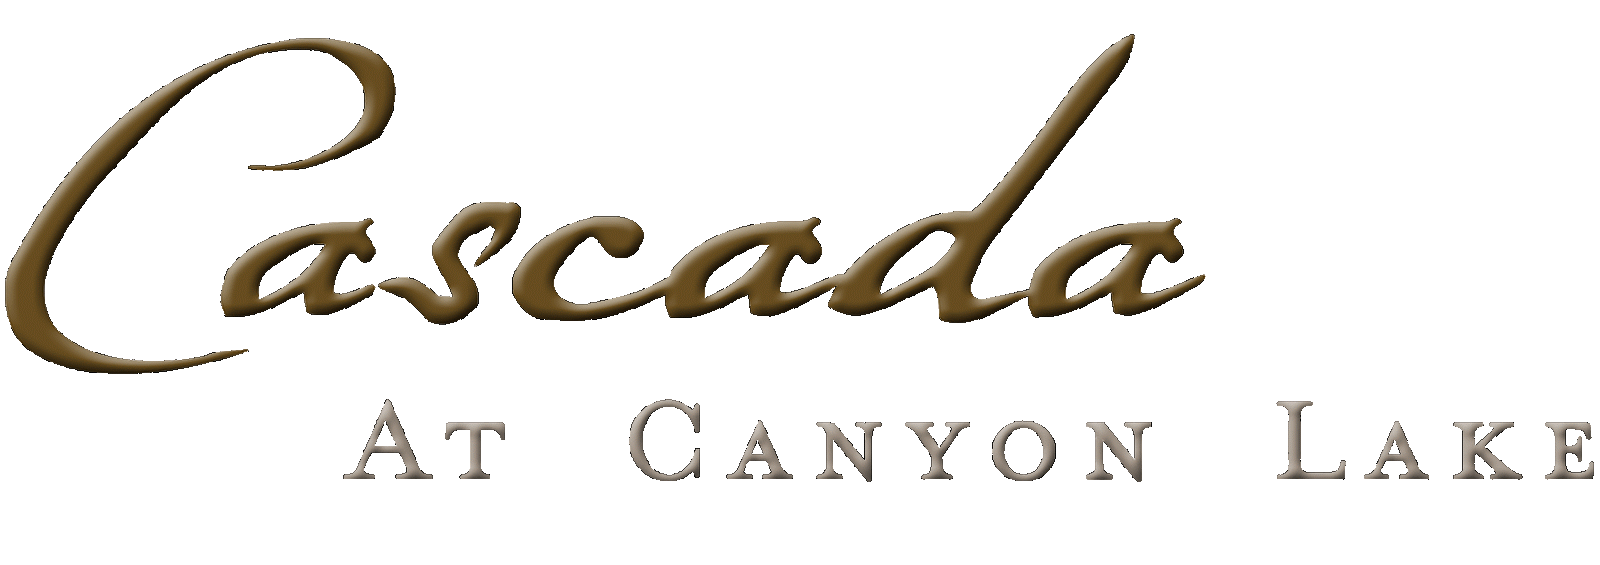 Cascada at Canyon Lake